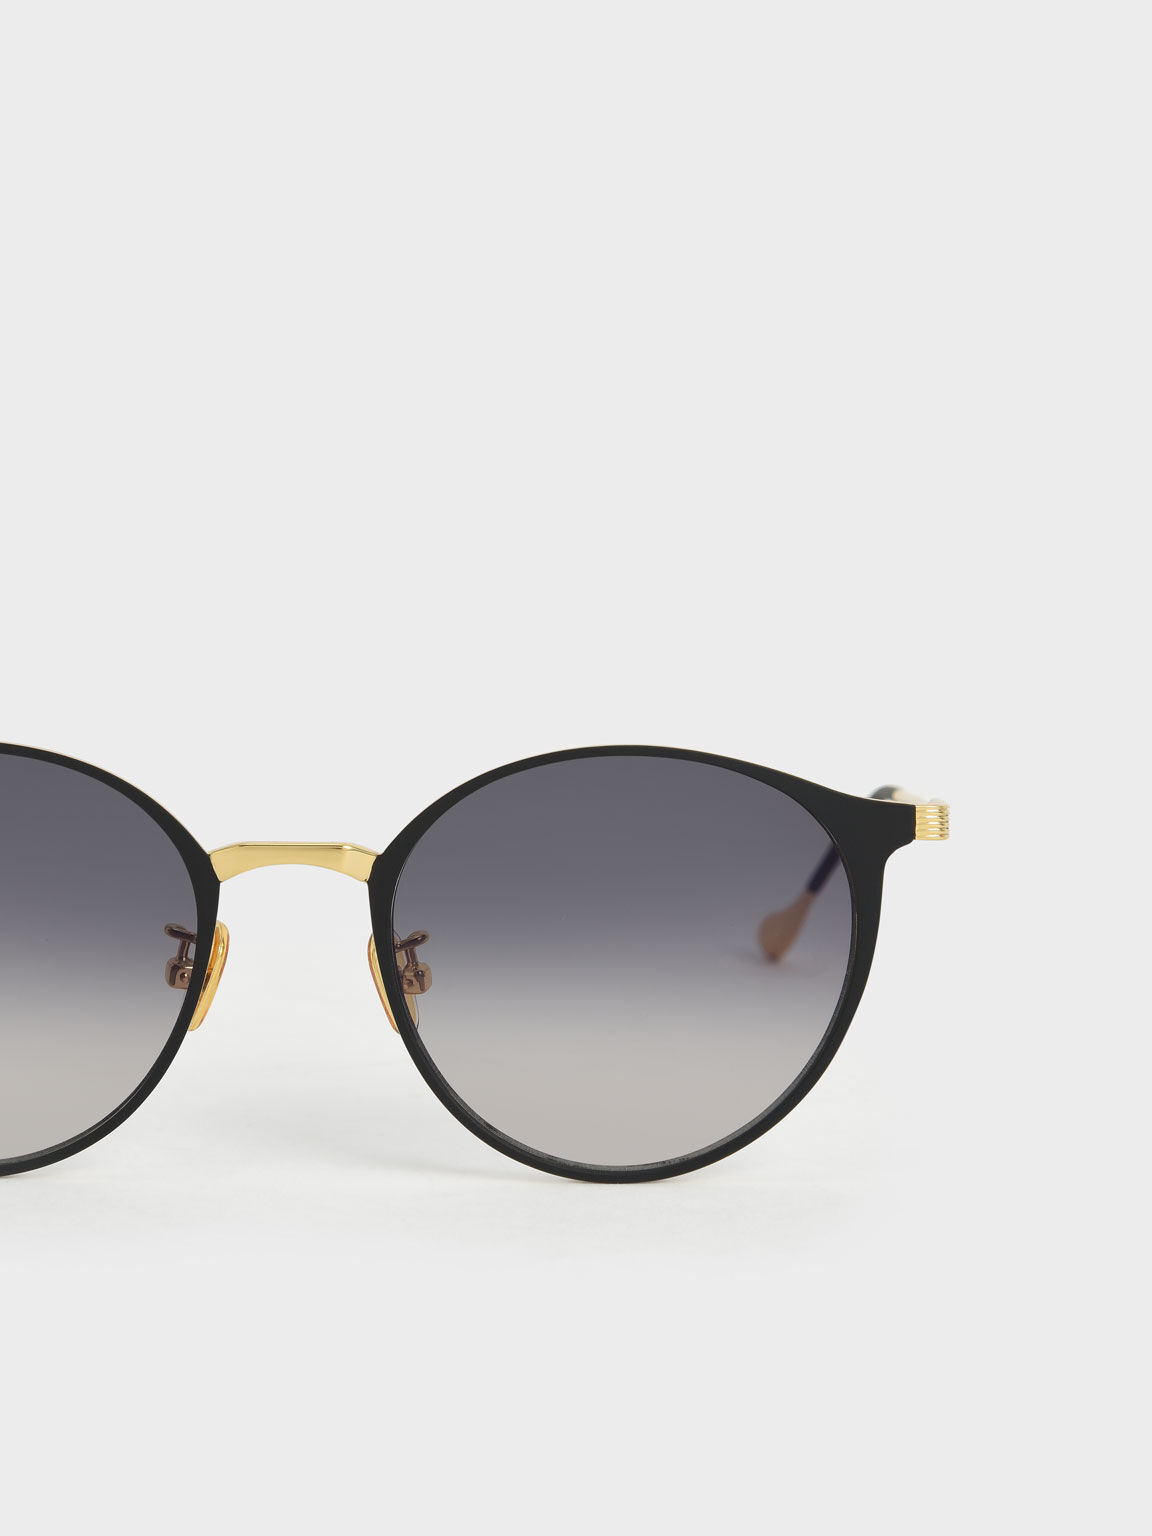 Tinted Round Sunglasses, Black, hi-res